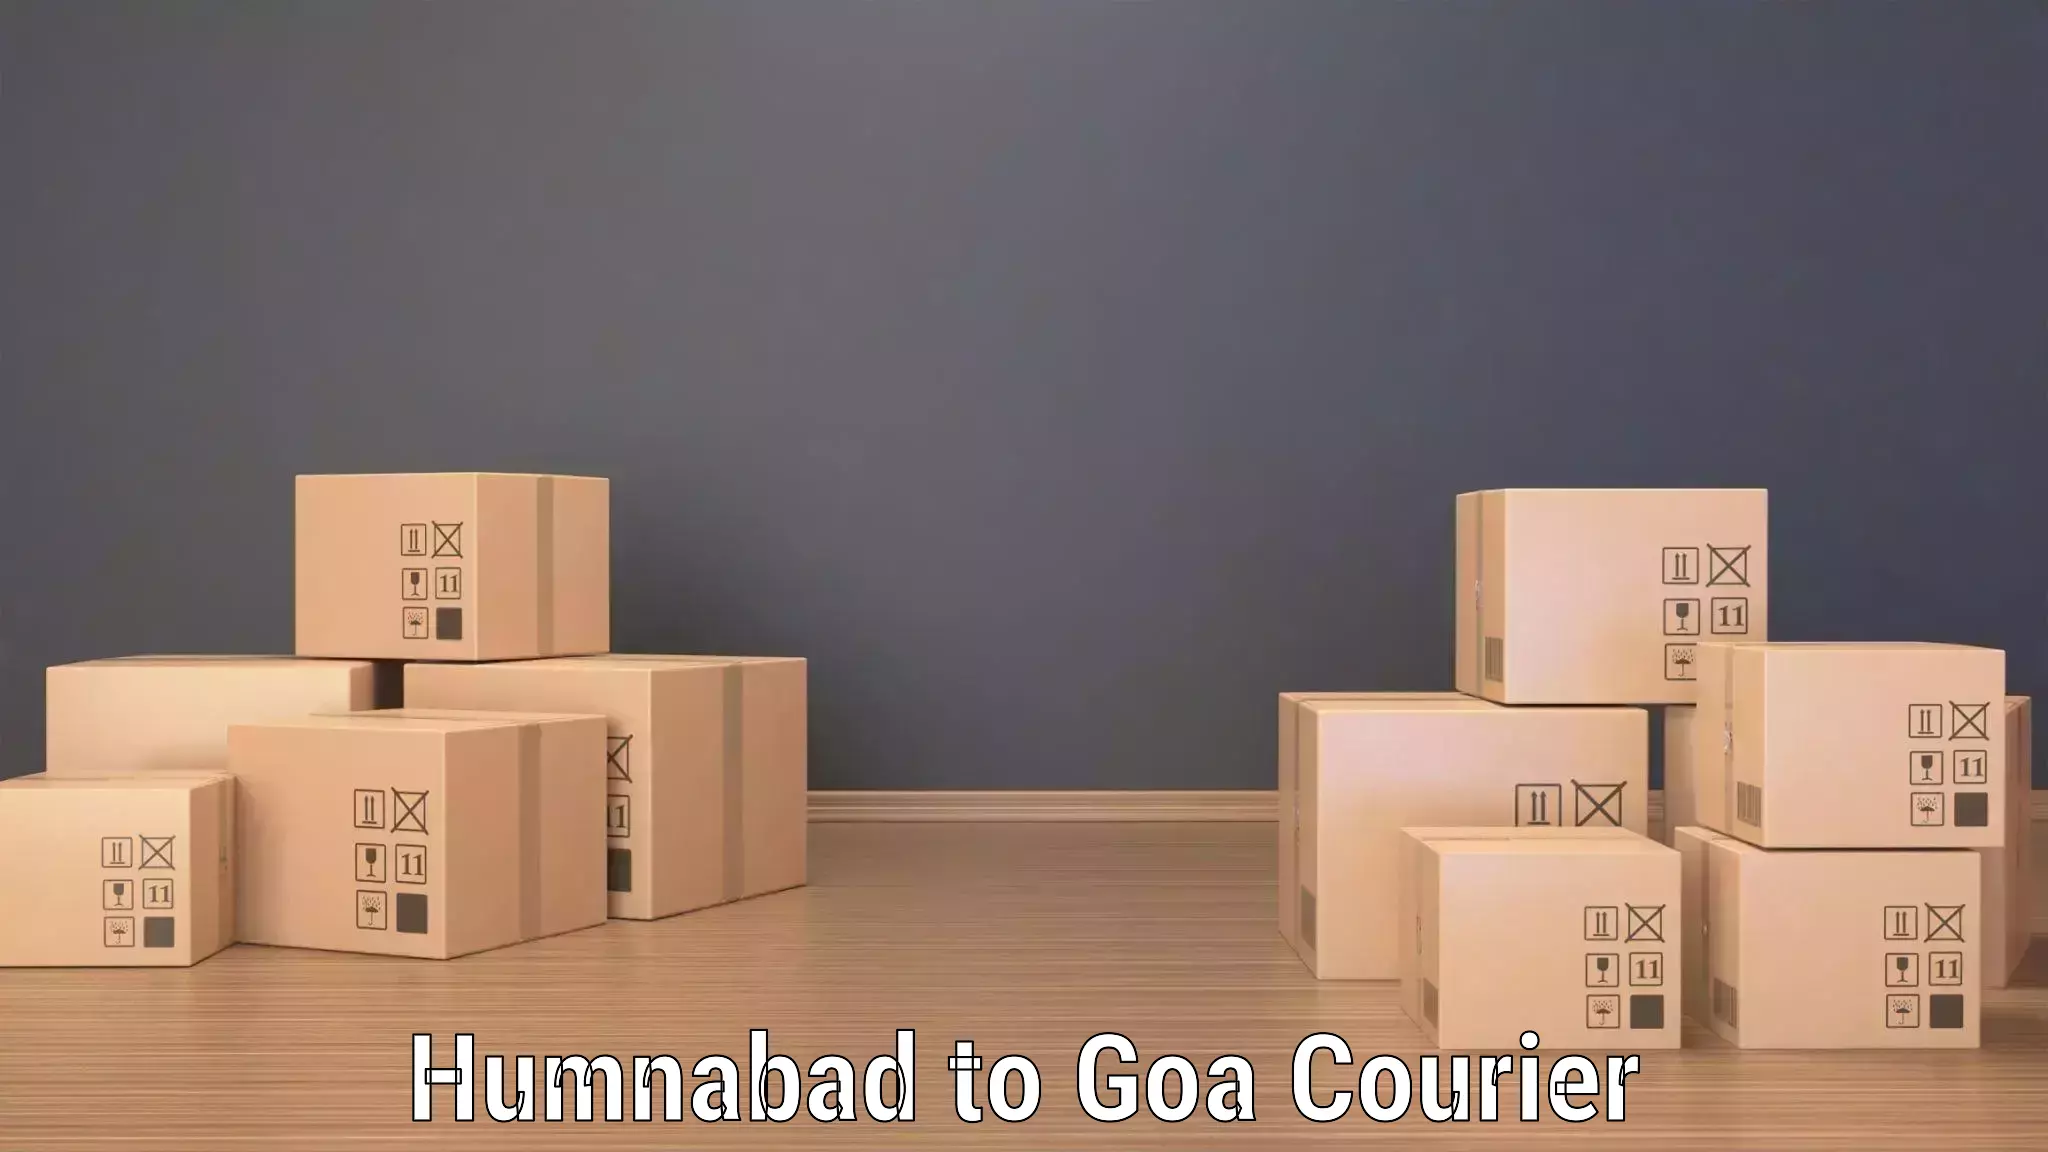 Tracking updates Humnabad to Goa University